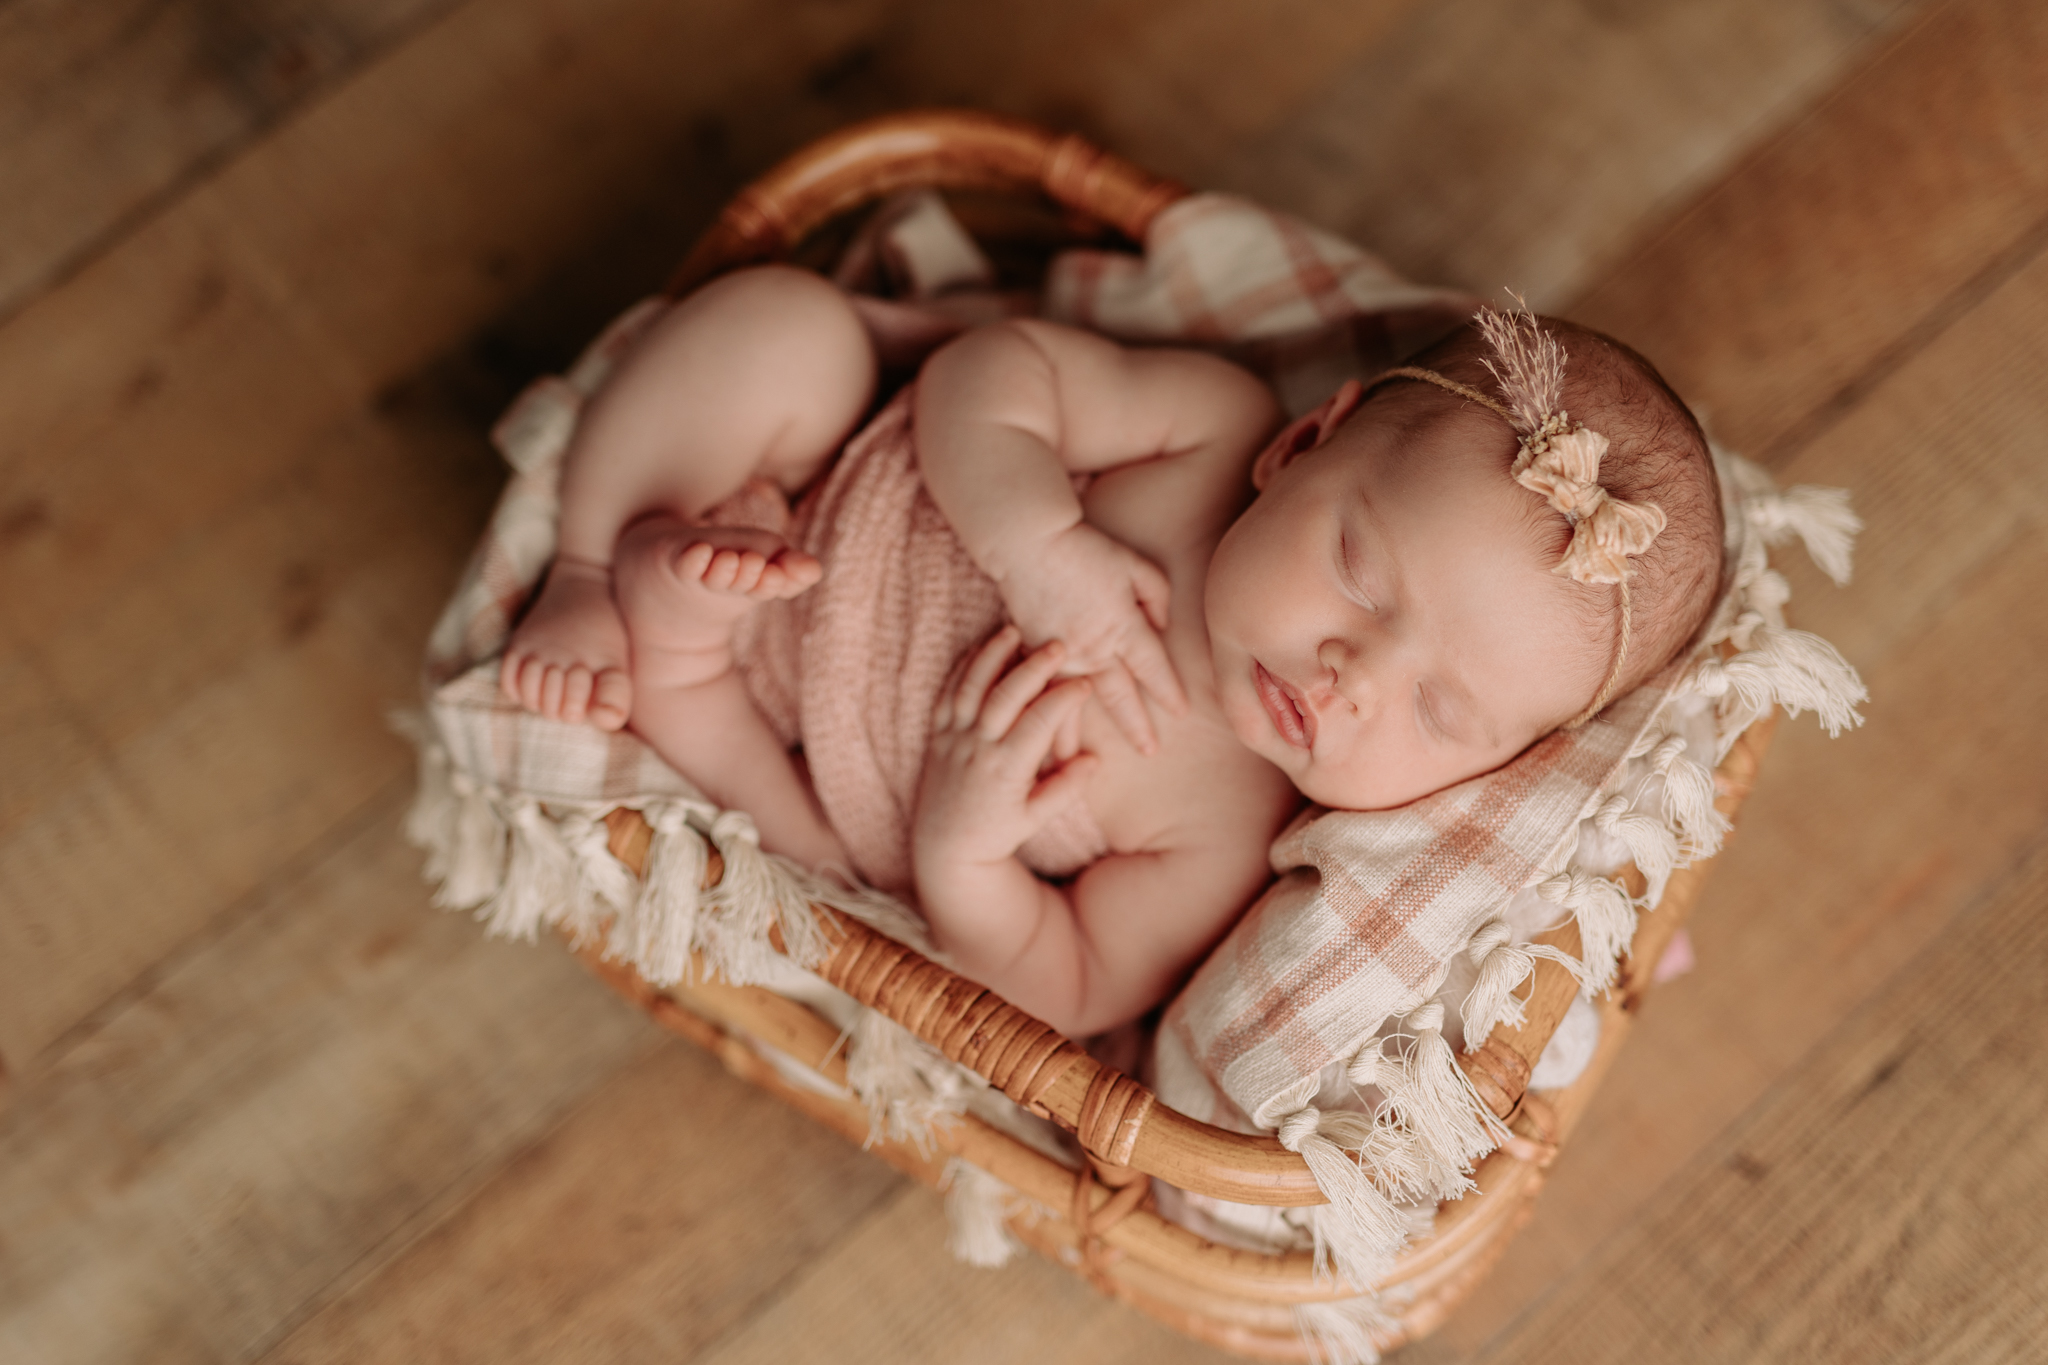 newborn girl in pink and cream at Pittsburgh newborn photography studio